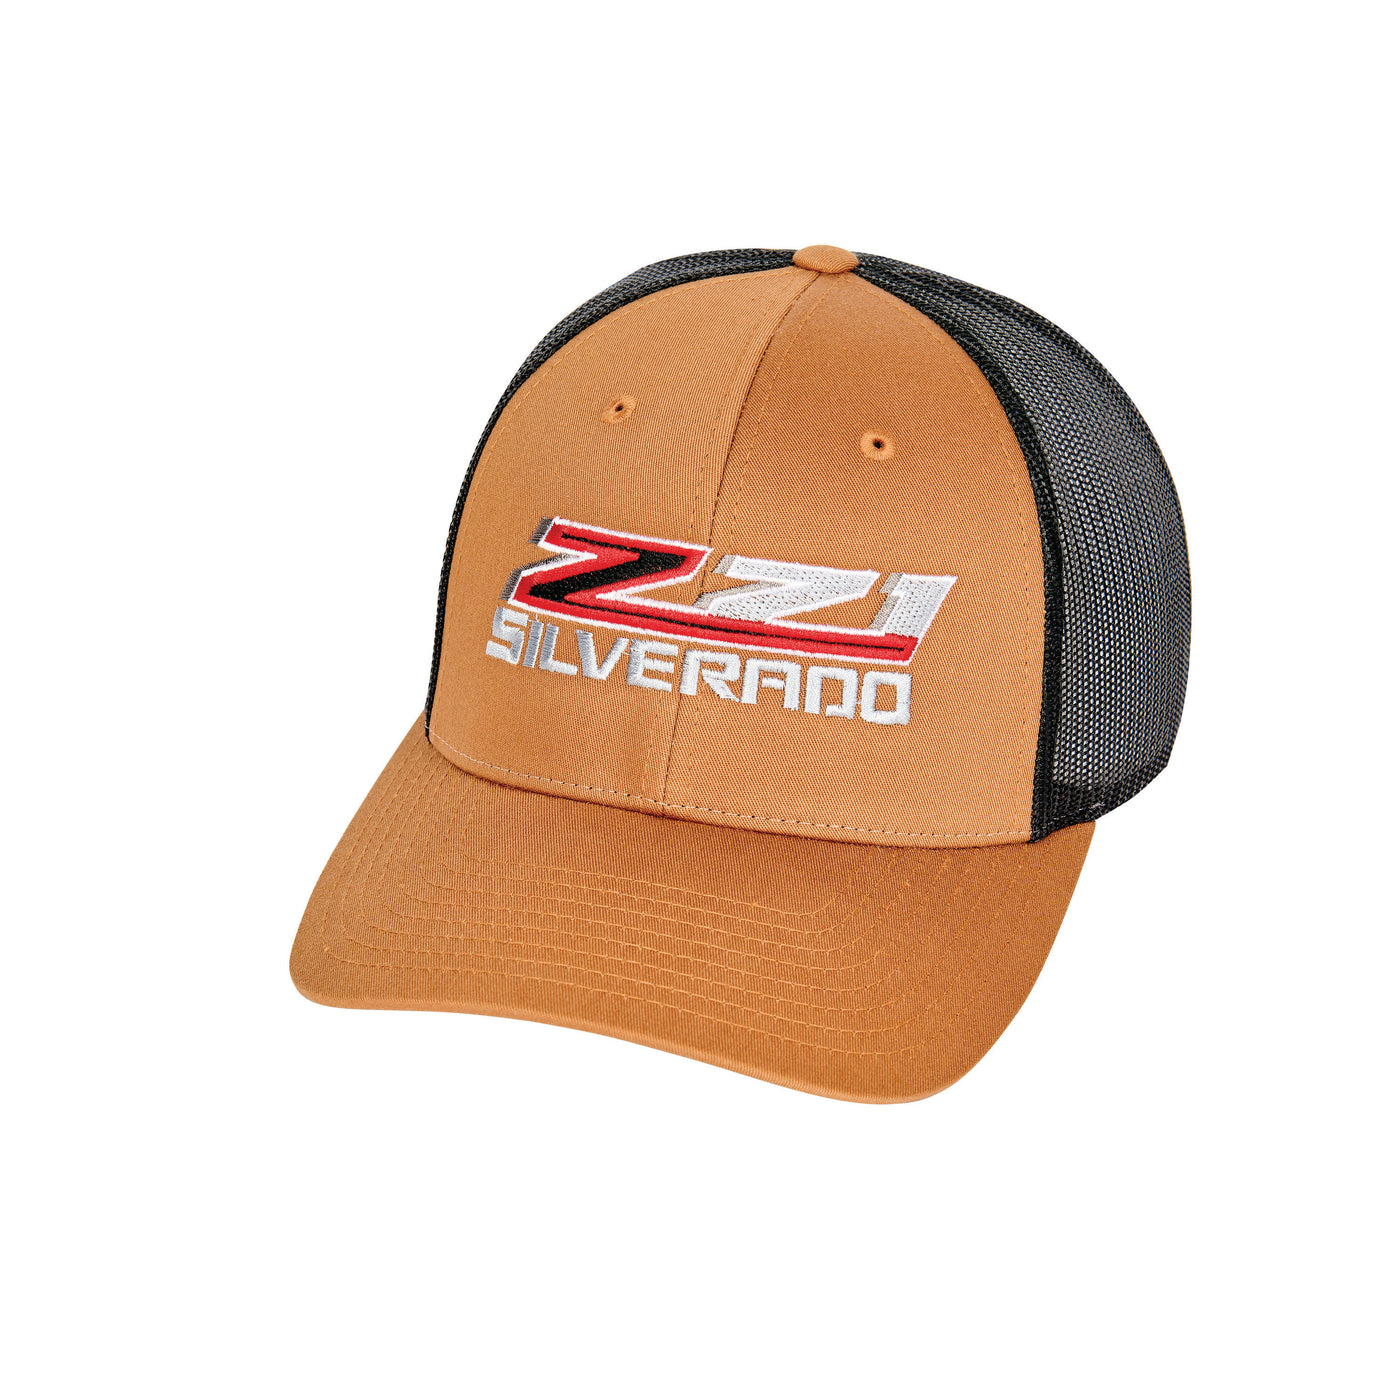 Z71 Silverado Trucker Hat